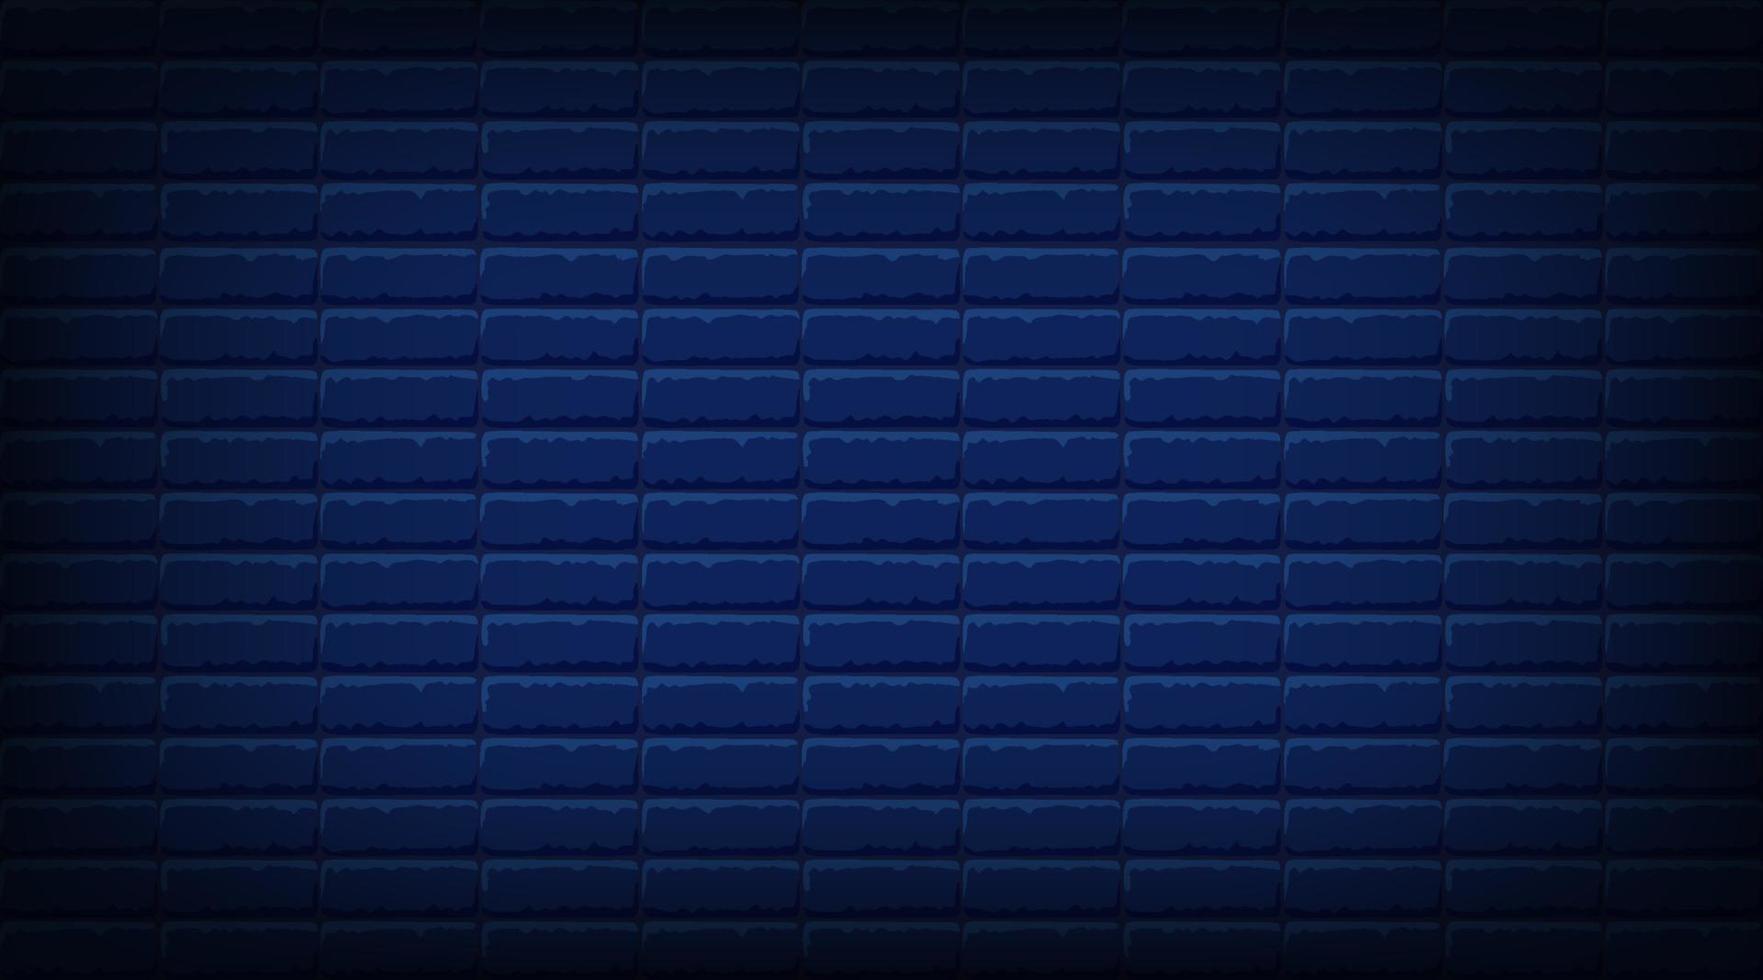 mur de briques bleu foncé nocturne. arrière-plan horizontal vectoriel pour les néons ou le texte, la texture de la maçonnerie.